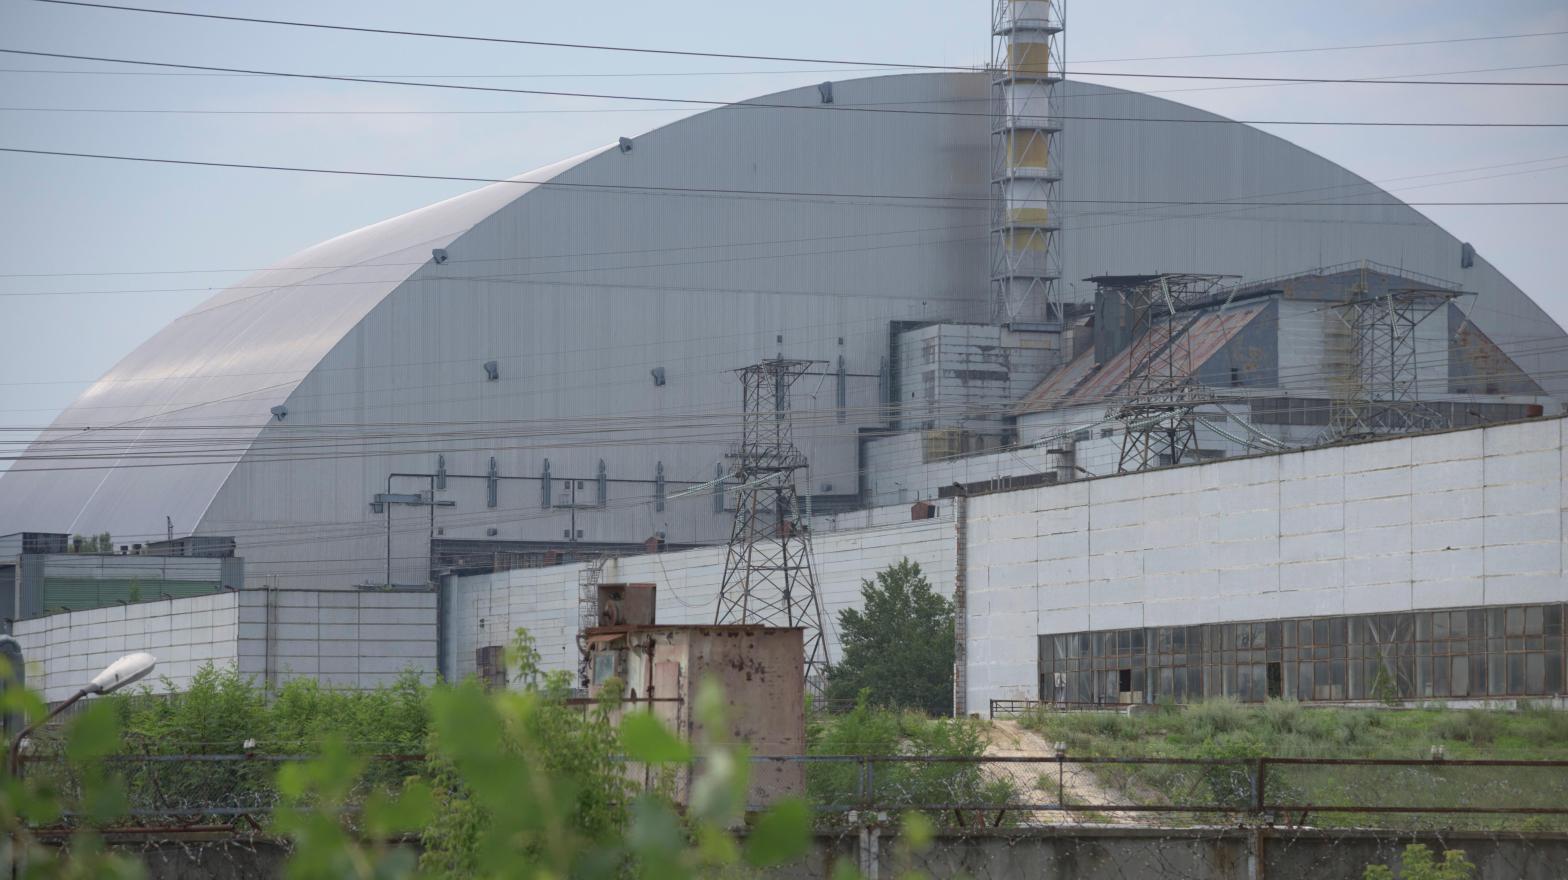 Sarcophagus over the Chernobyl nuclear power plant. (Photo: Hnapel, Fair Use)